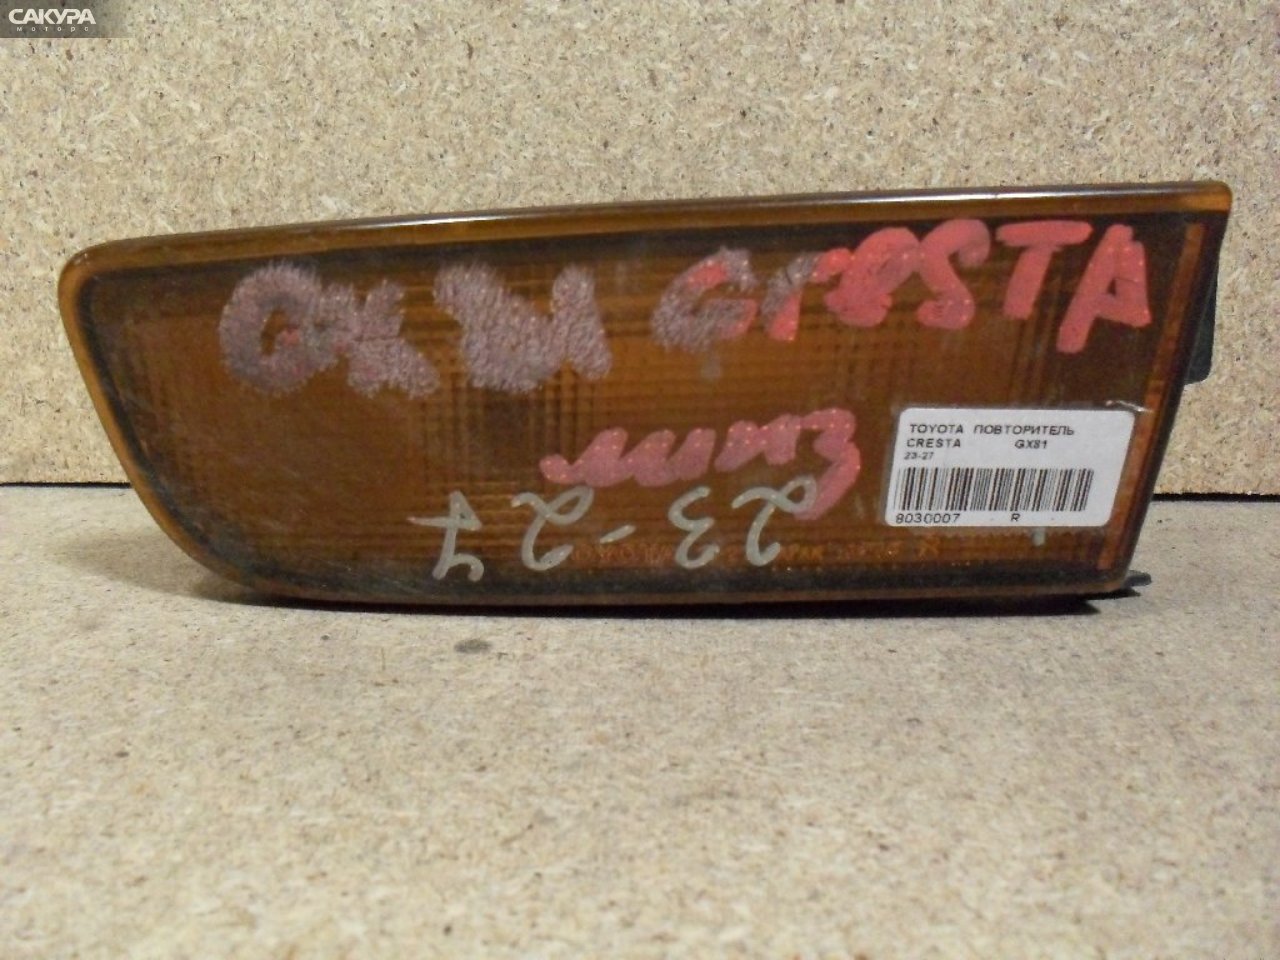 Повторитель правый Toyota Cresta GX81 23-27: купить в Сакура Абакан.